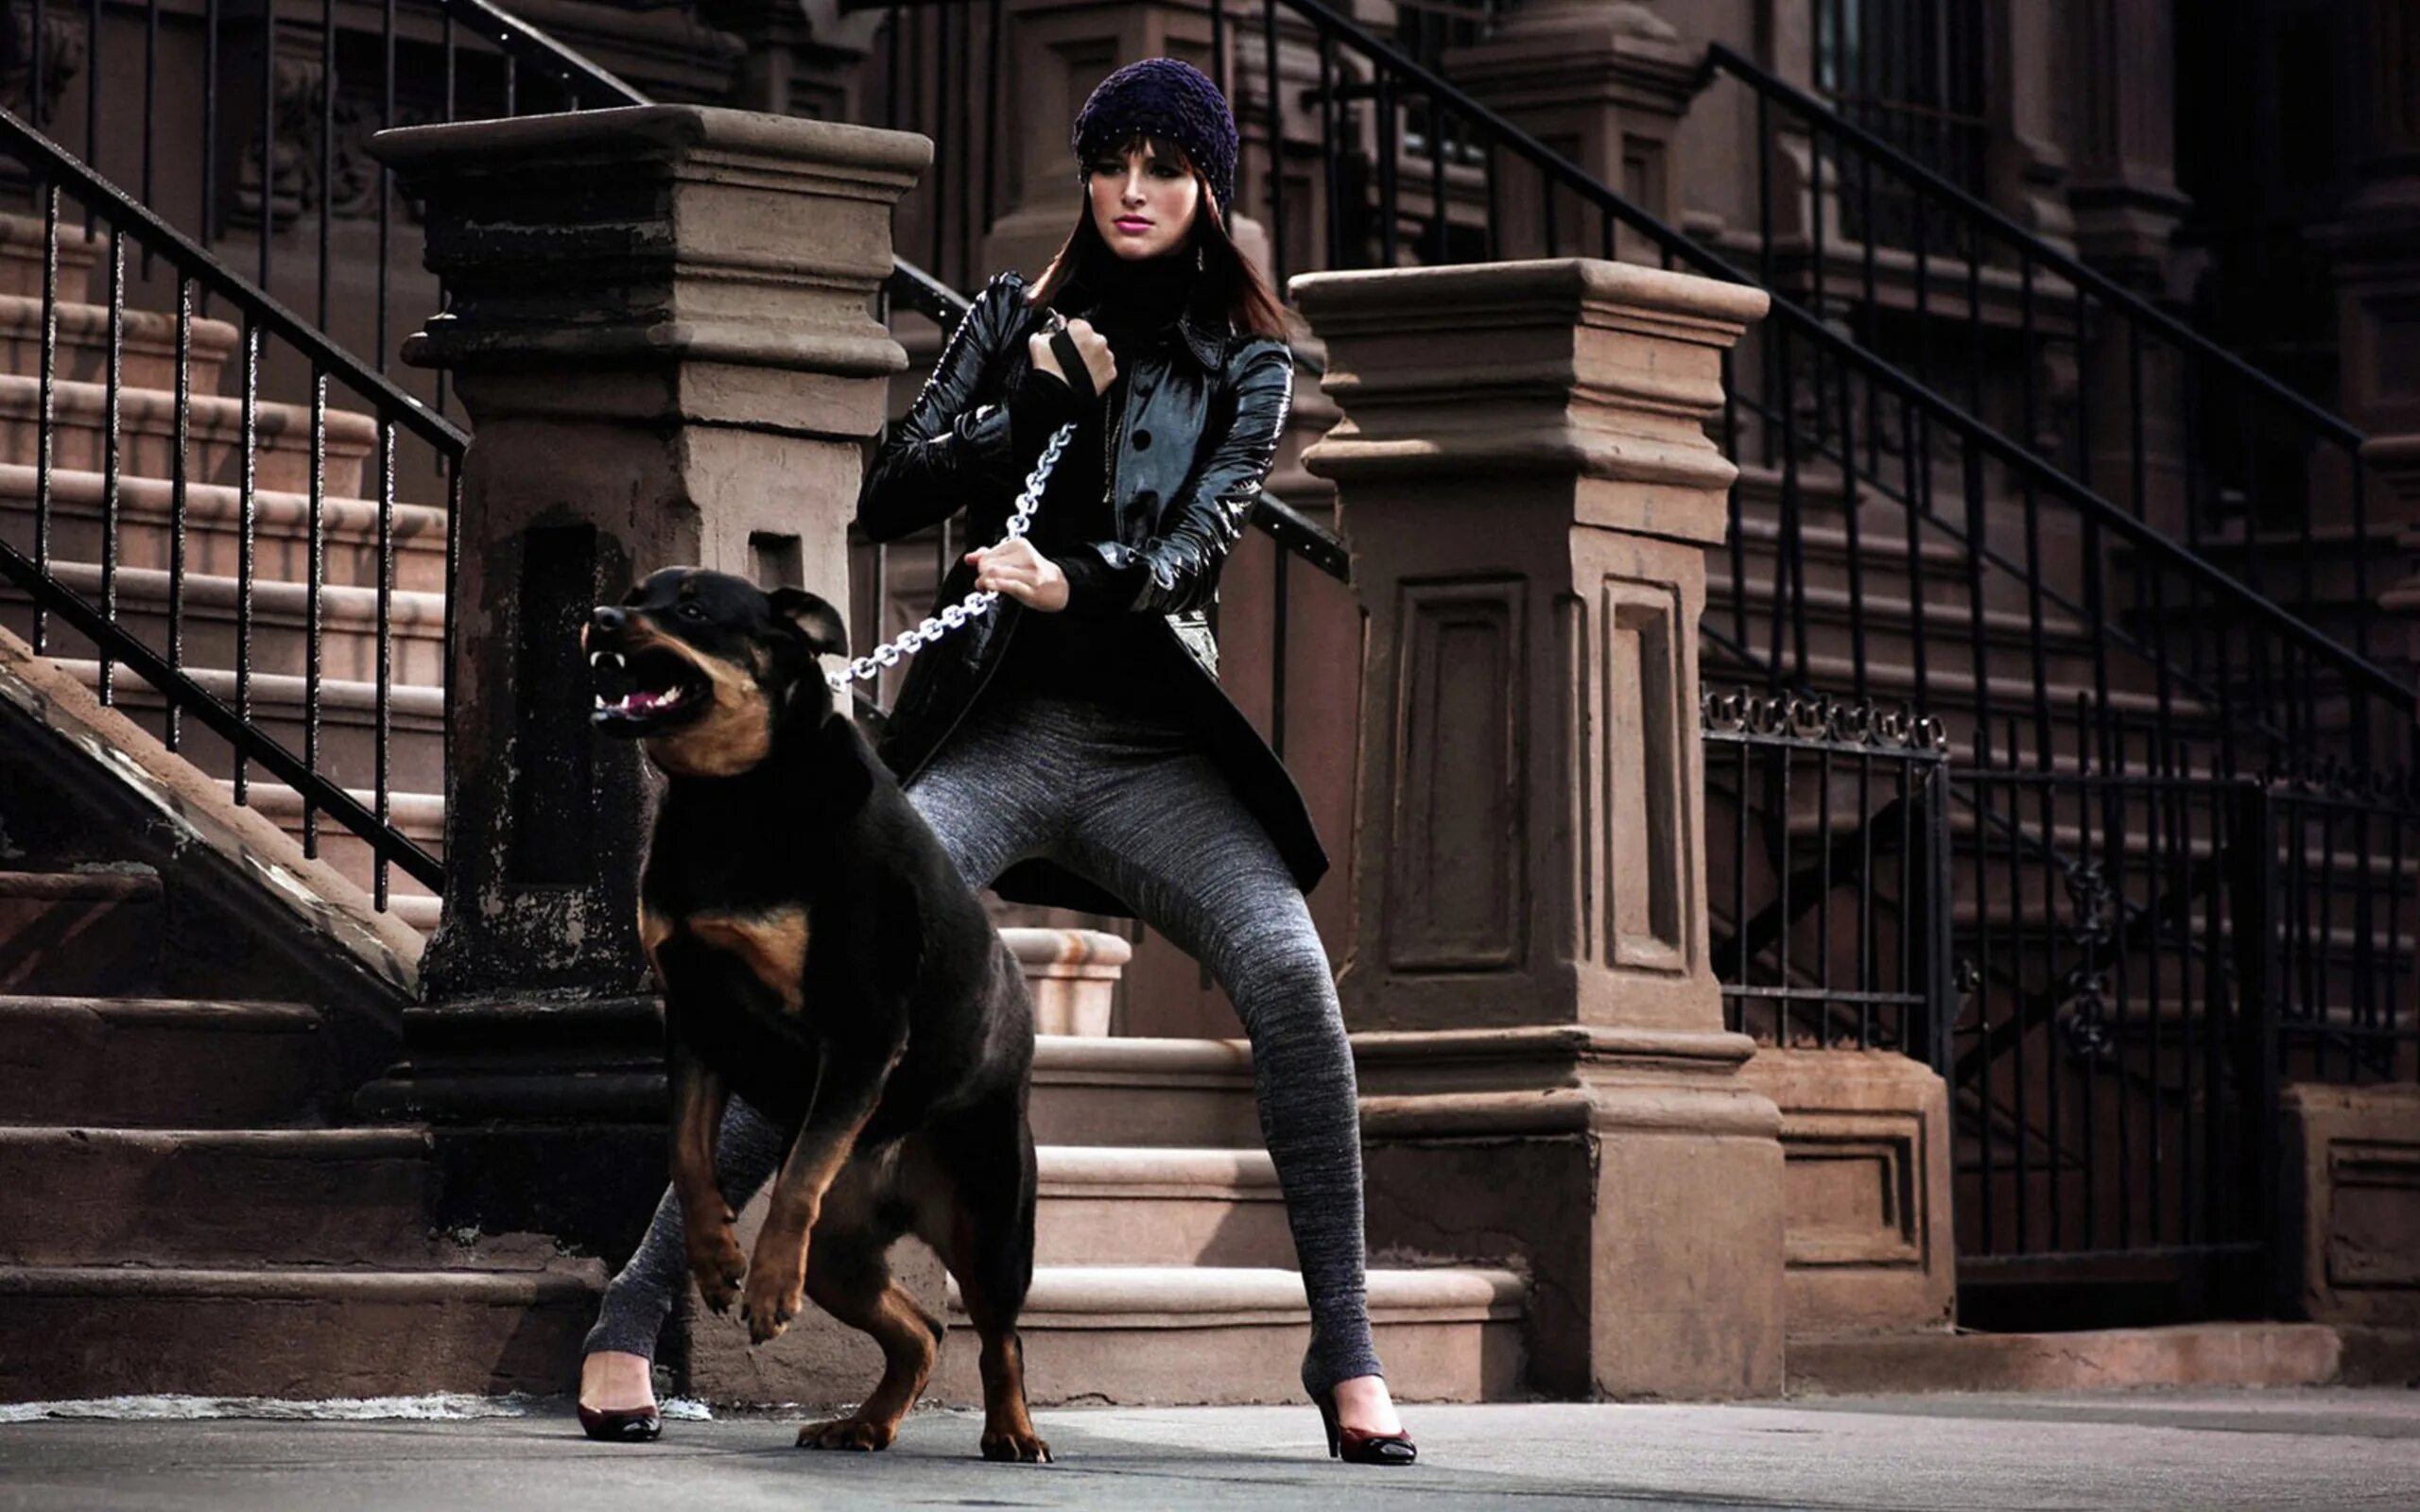 Woman 3 dog. Доберман и ротвейлер. Девушка с собакой фотосессия. Девушка с ротвейлером.